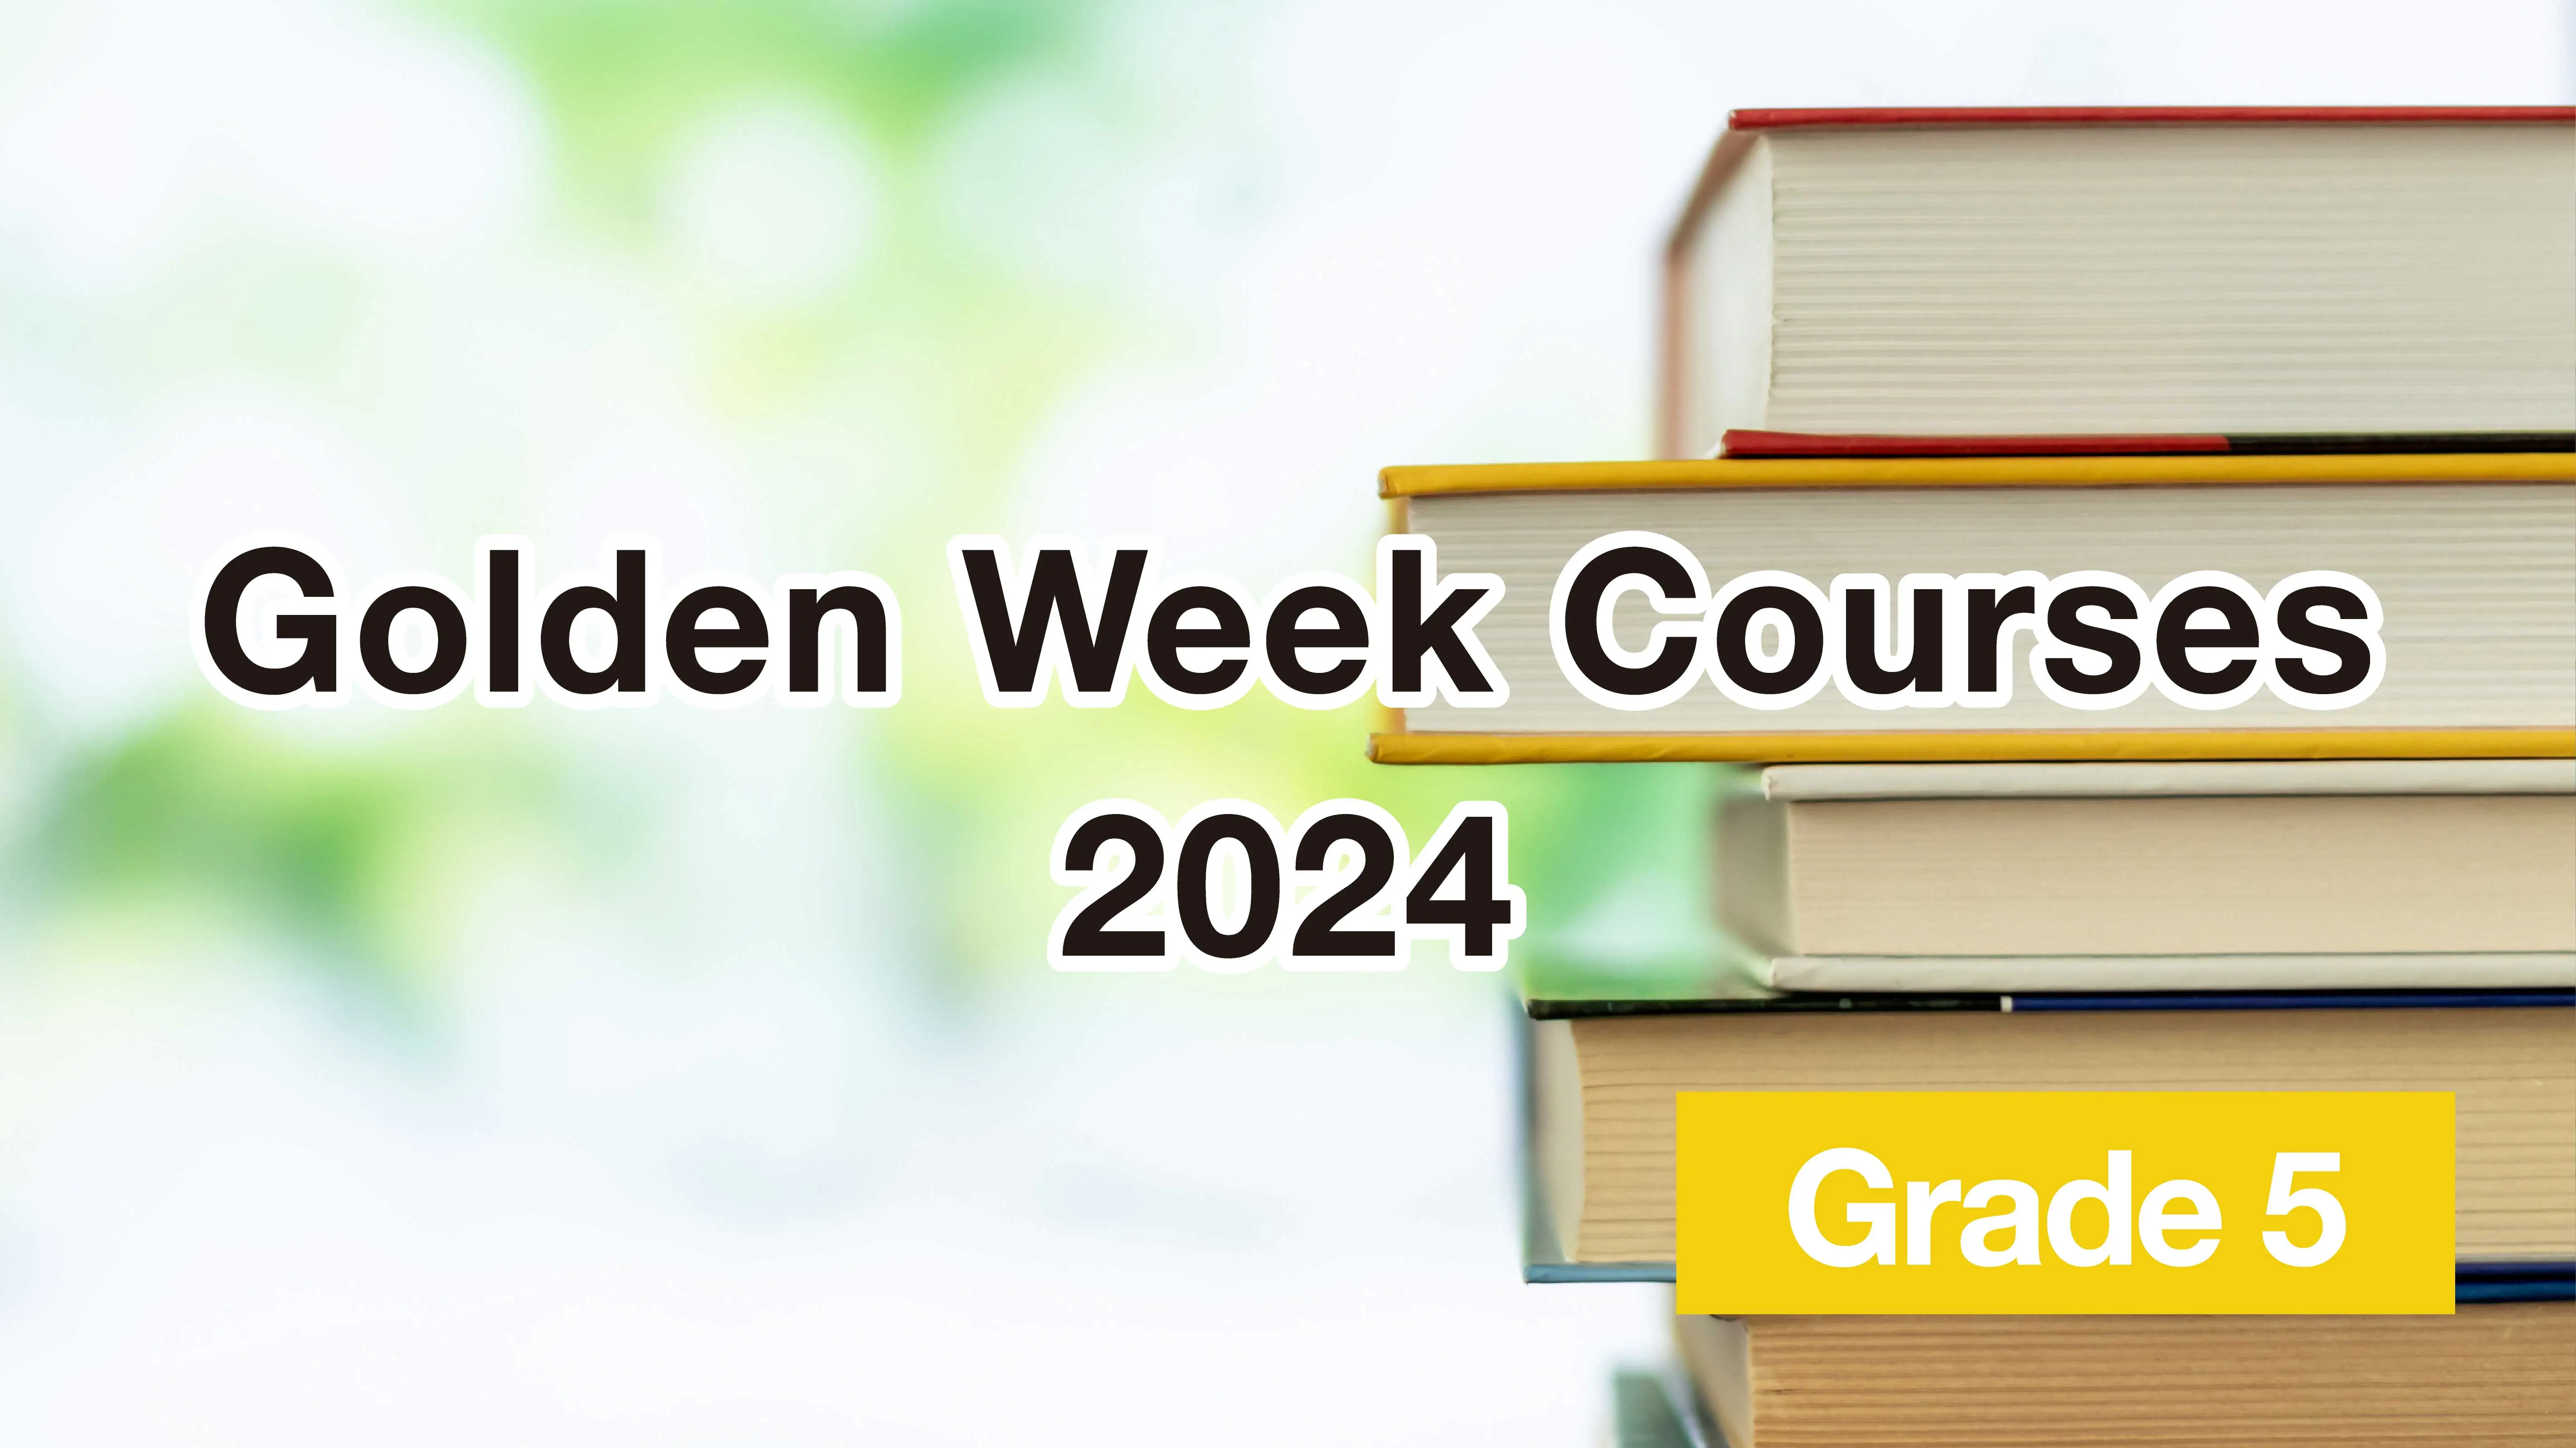 Golden Week Courses 2024 - Grade 5 -